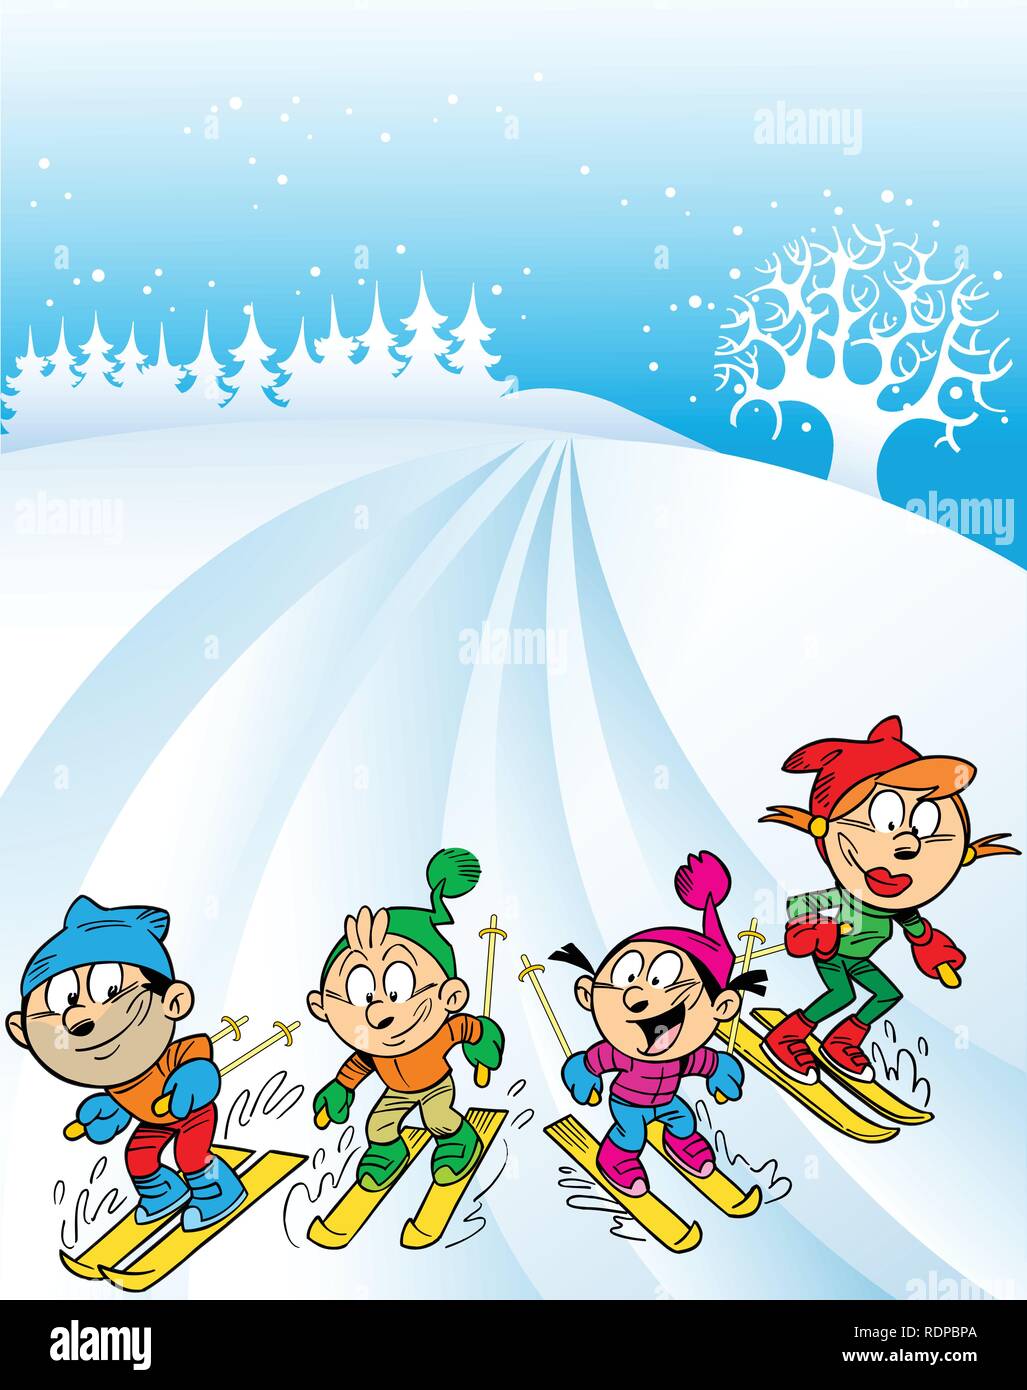 L'illustration montre un voyage de ski en famille. Les enfants avec les parents à la montagne de ski. En fait l'illustration cartoon style, sur des calques distincts. Illustration de Vecteur